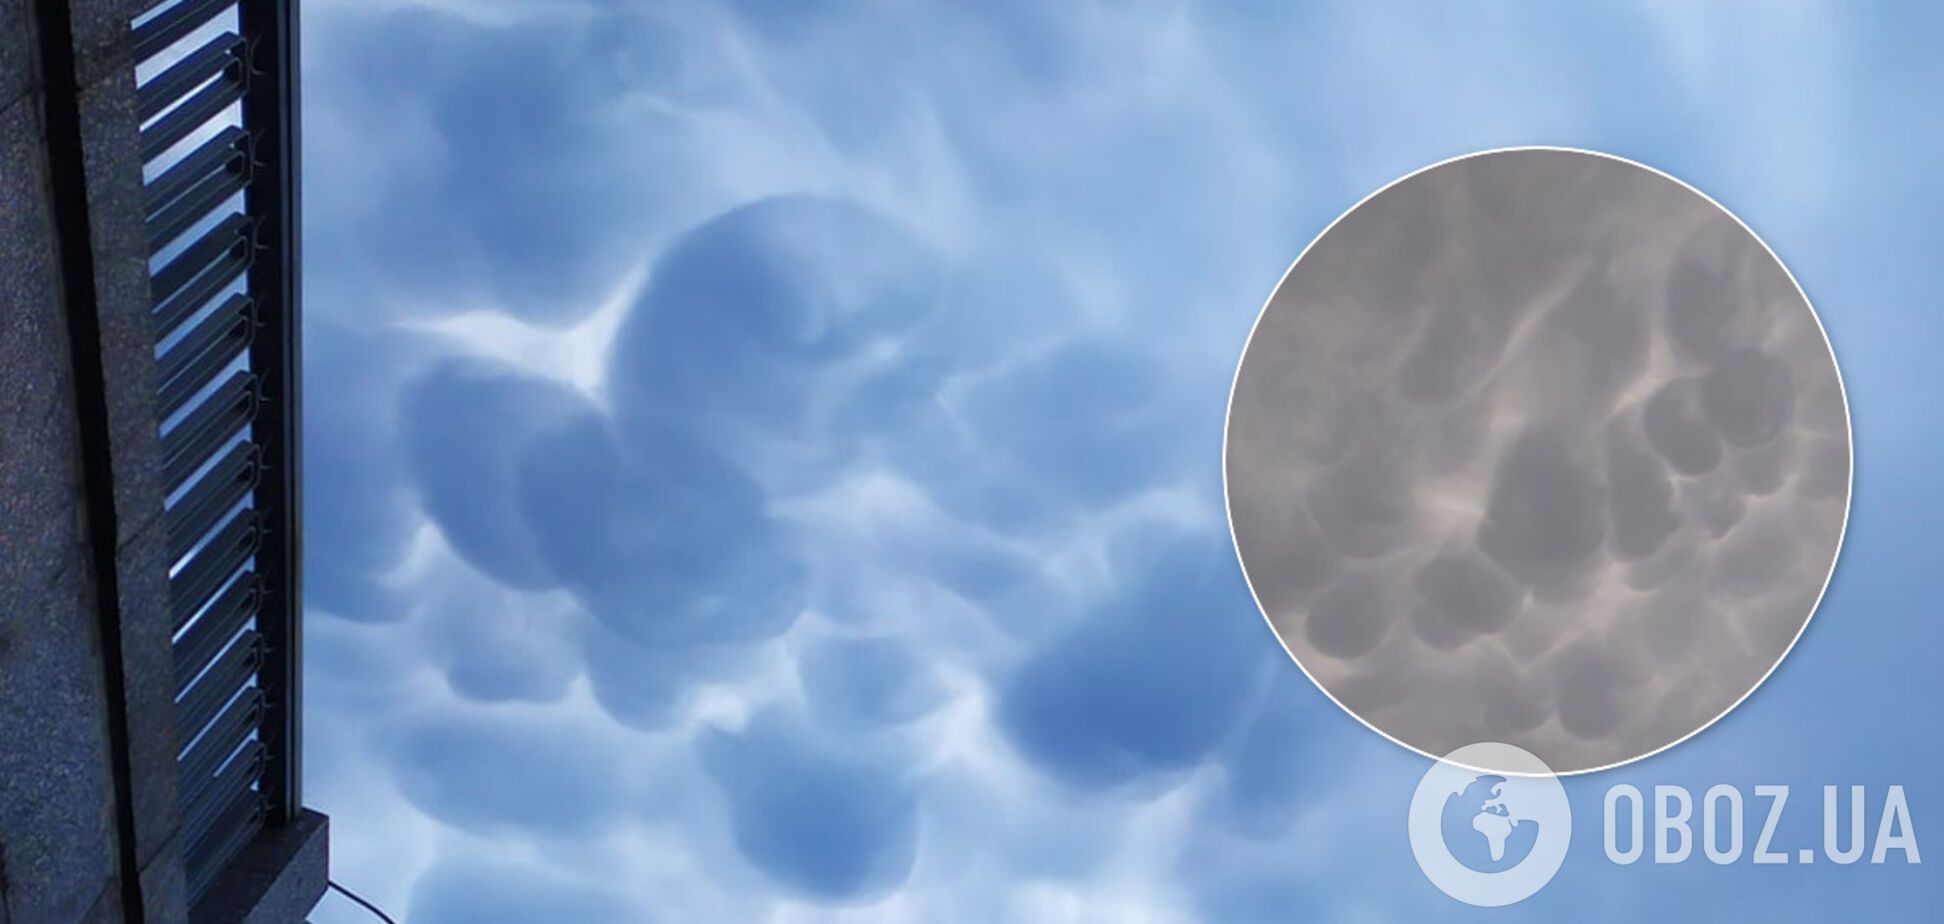 Над Києвом помітили 'зловісні' хмари: вражаючі фото